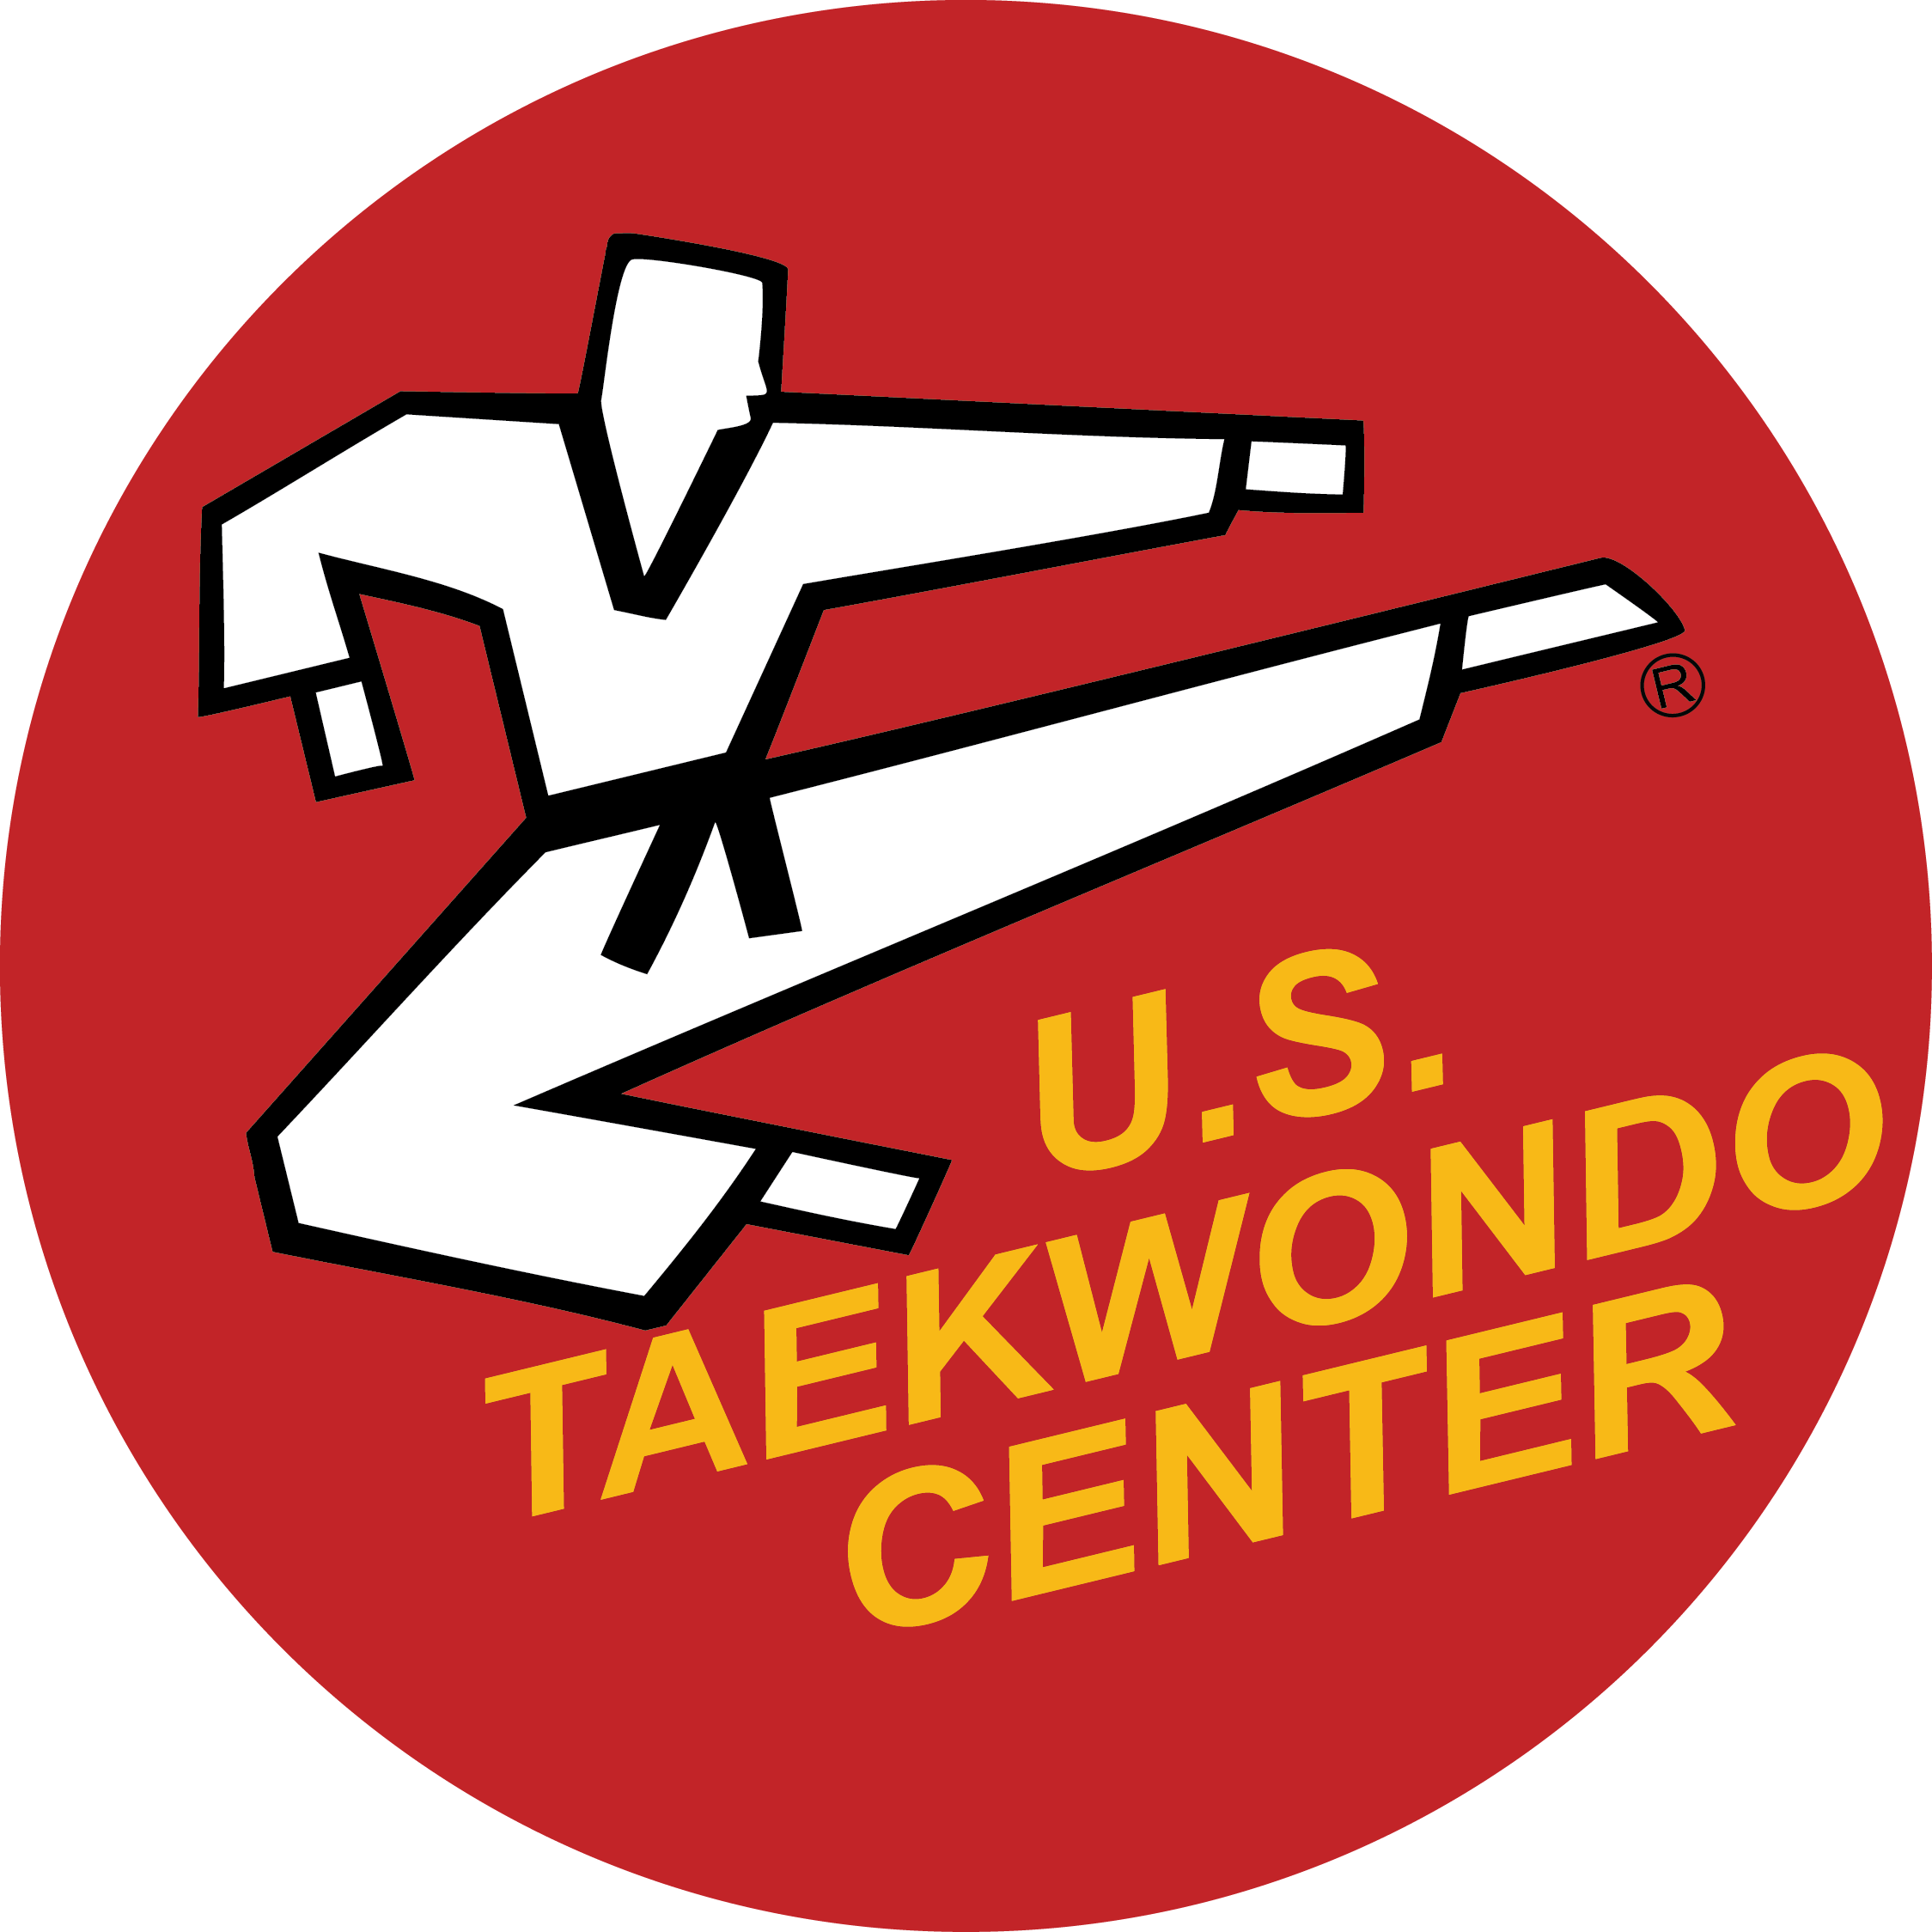 Taekwondo Center In Partnership With U - Us Tae Kwon Do (2249x2249)